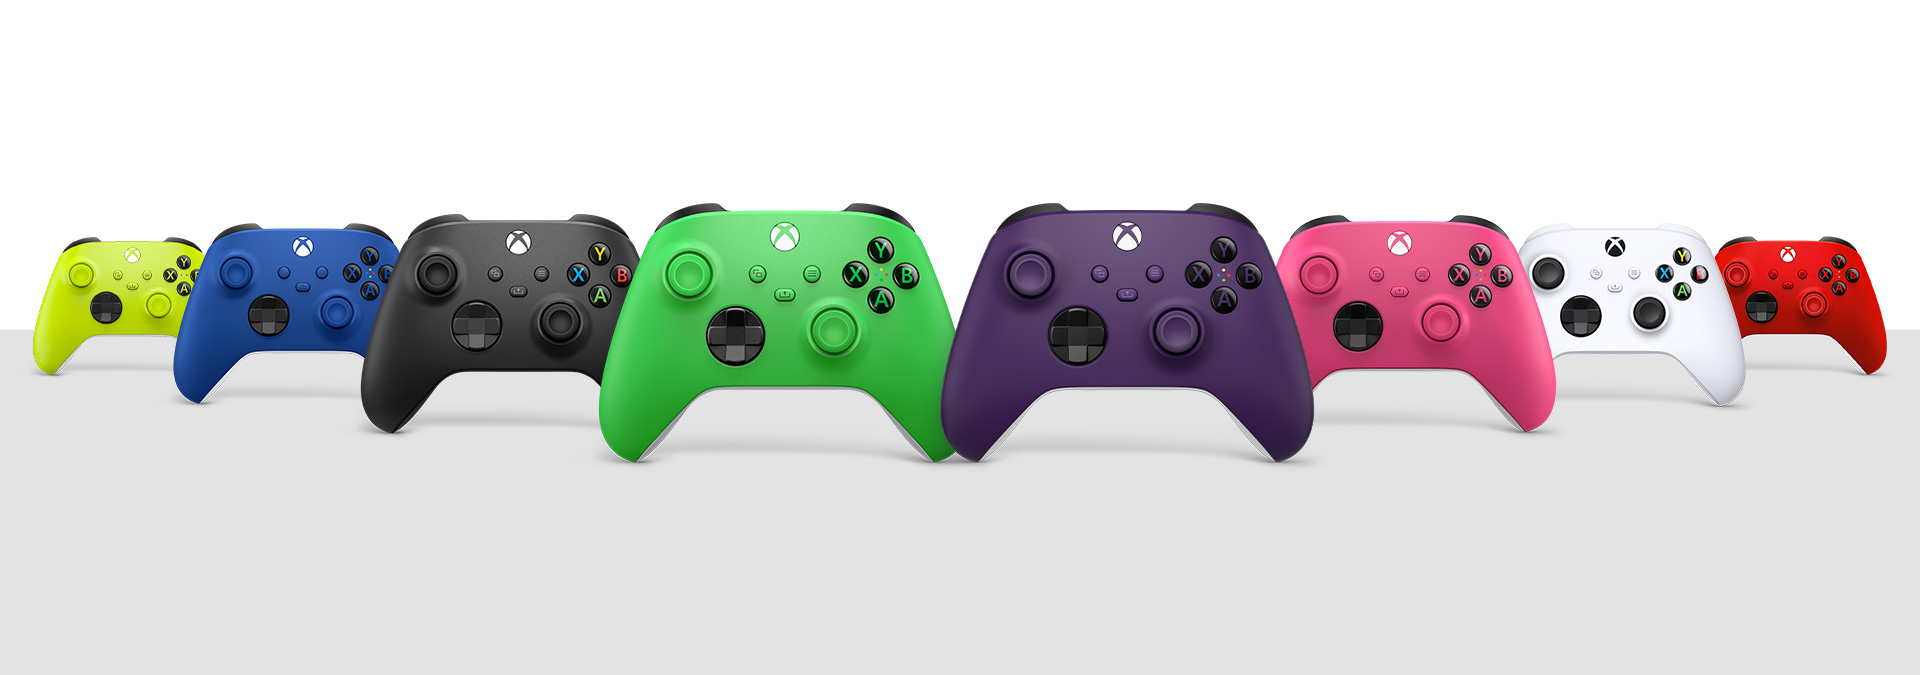 Mando inalámbrico Xbox en negro carbón, blanco robot, azul brillante, rojo latido, voltios eléctricos, rosa intenso, verde velocidad y púrpura astral